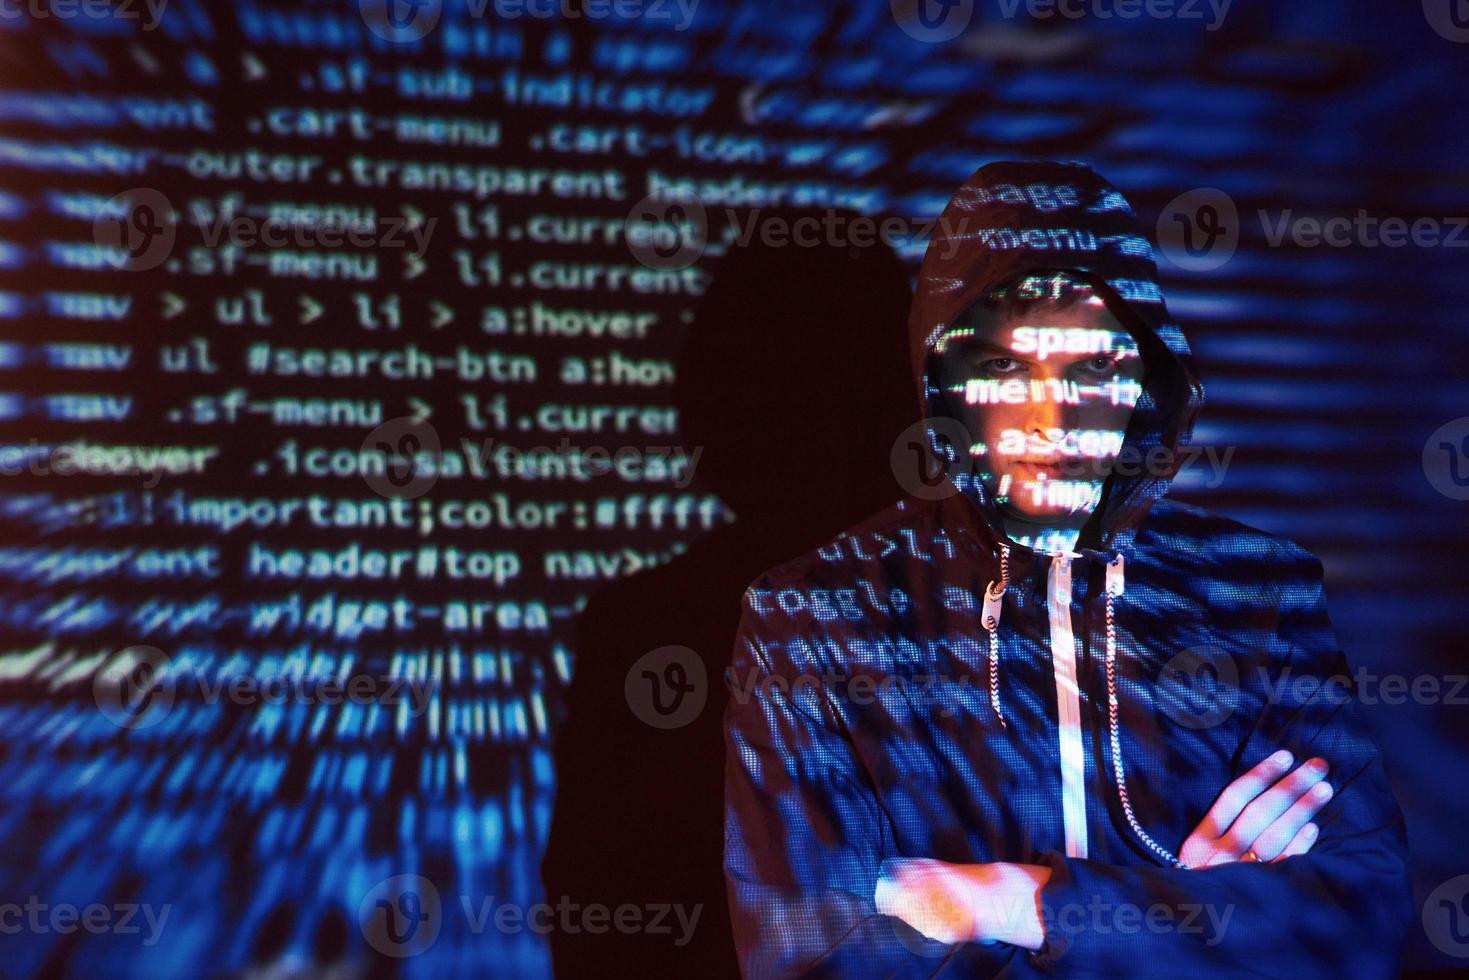 Cyber-Angriff mit nicht erkennbarem Hacker mit Kapuze unter Verwendung von virtueller Realität, digitaler Glitch-Effekt foto